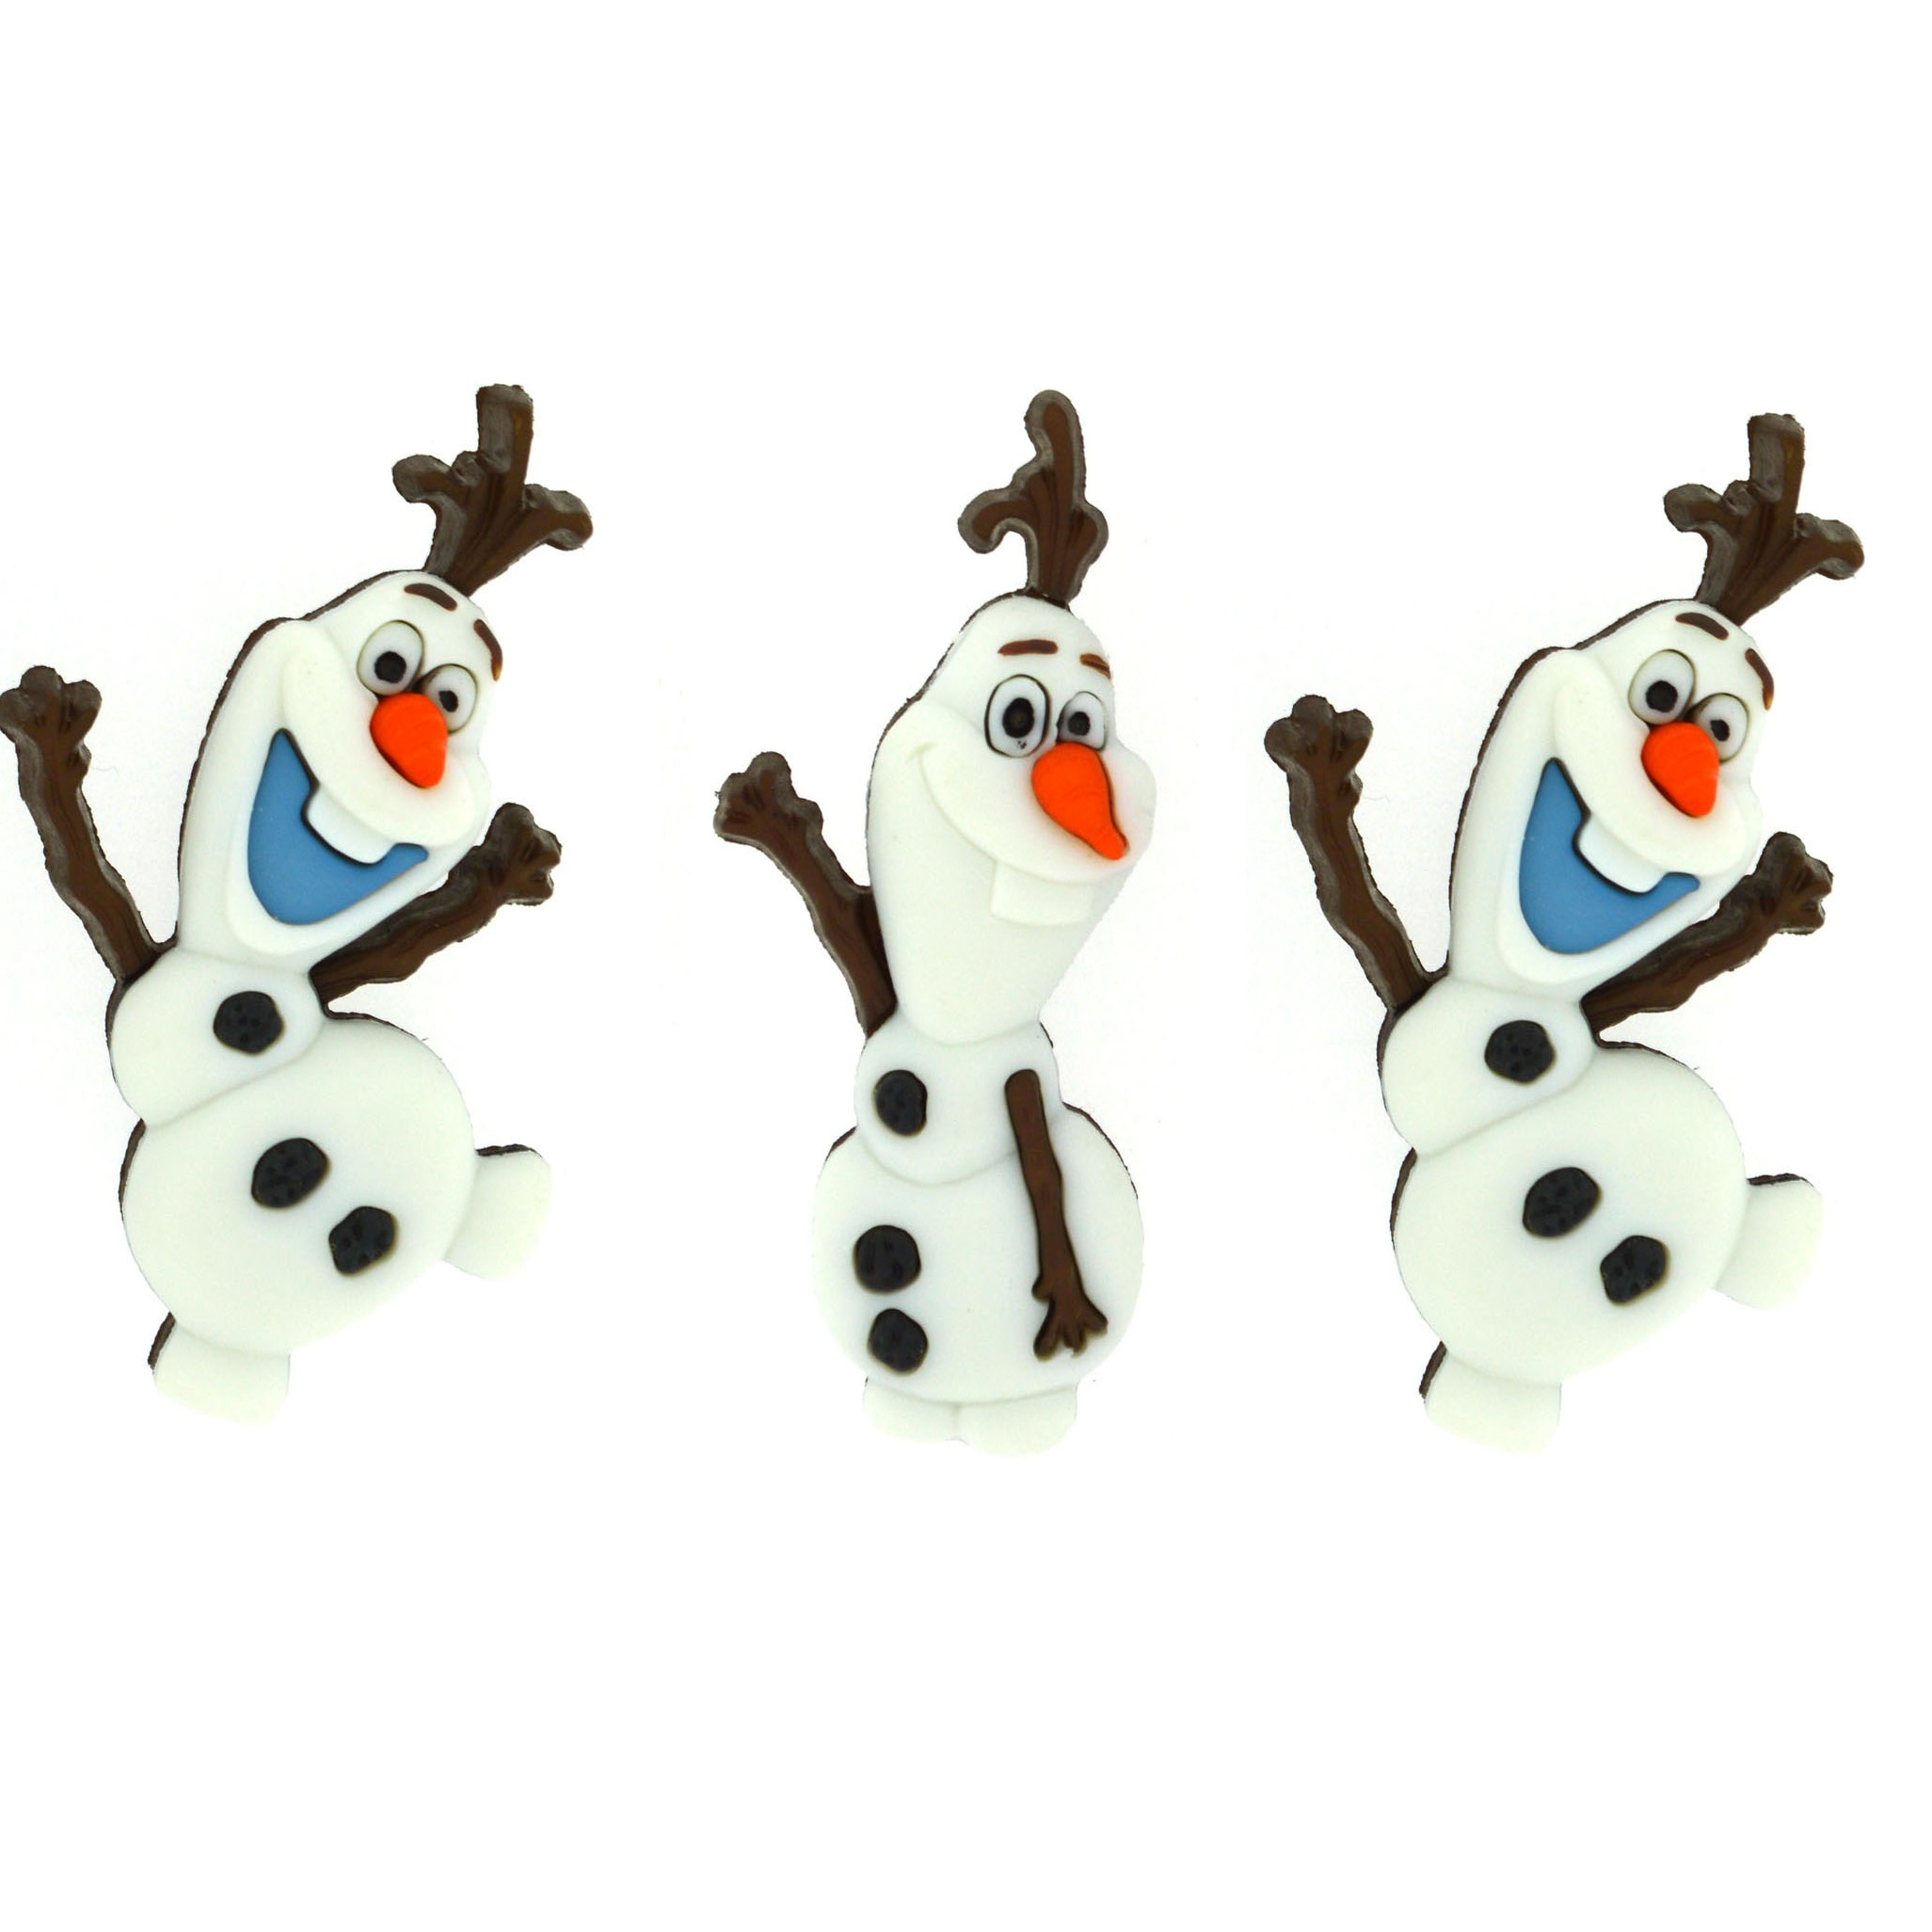 DISNEY FROZEN OLAF Snowman Winter Snow Christmas Dress It Up Craft Buttons 